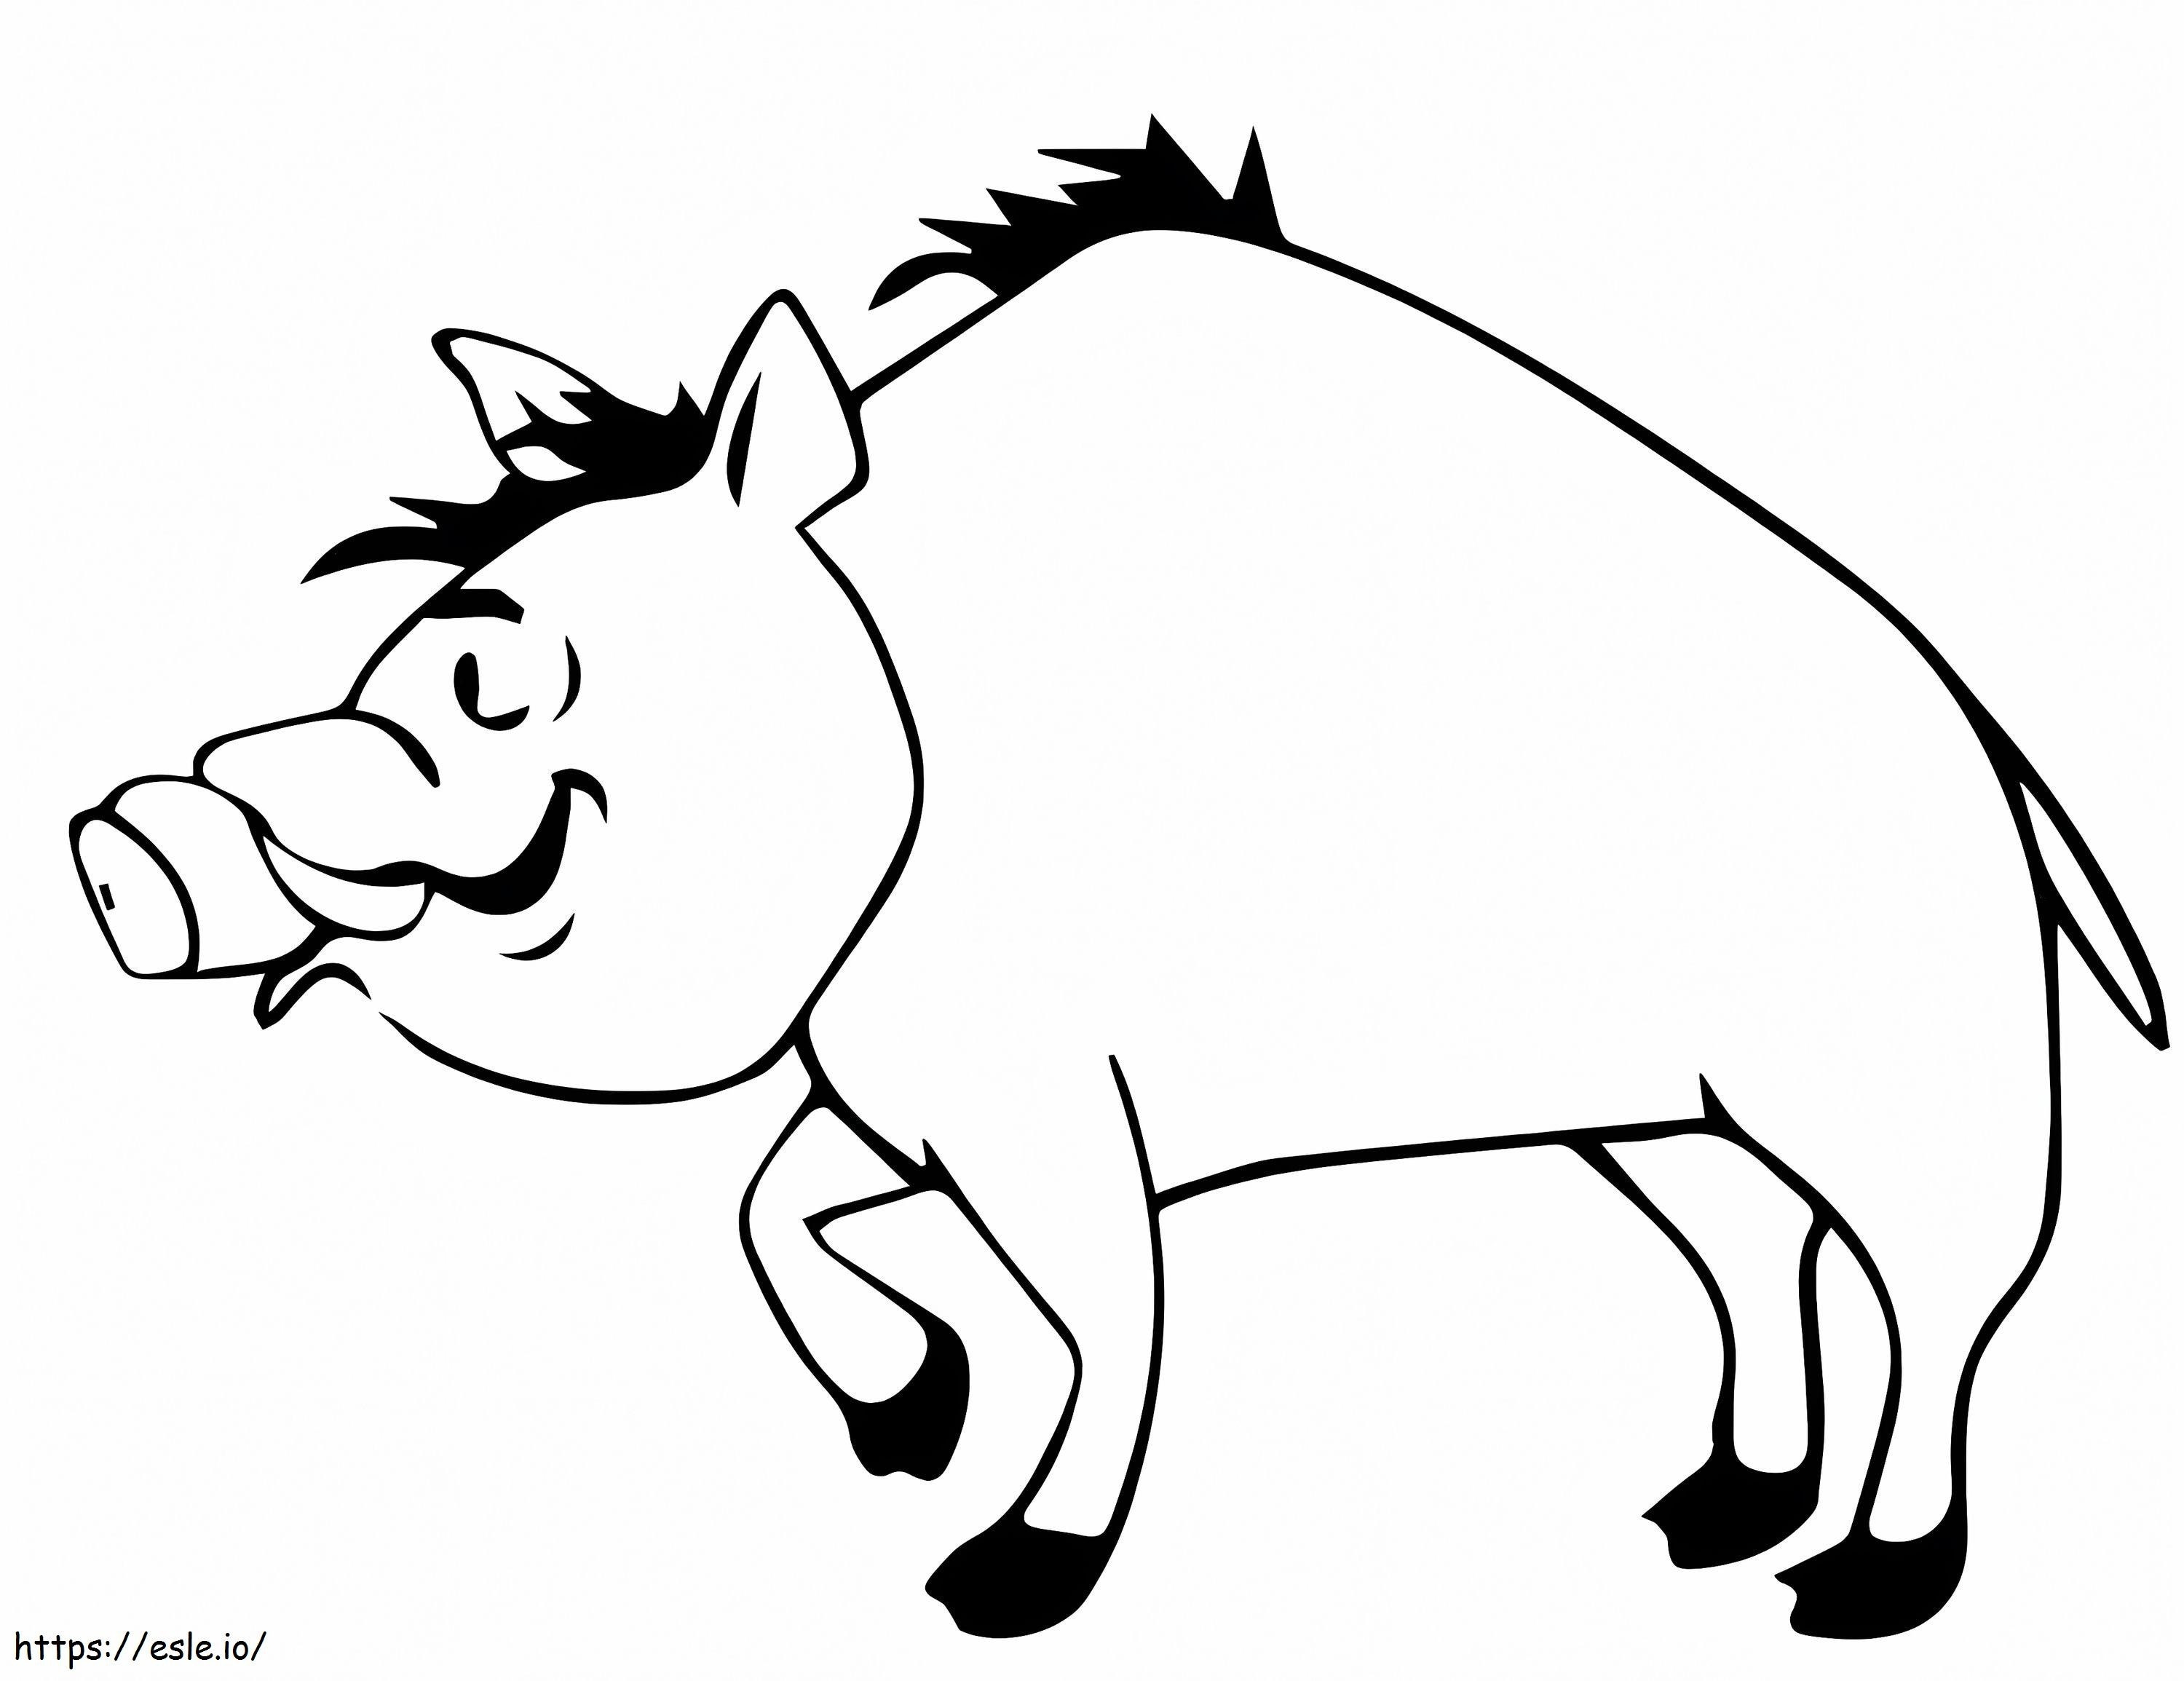 Cartoon Boar coloring page